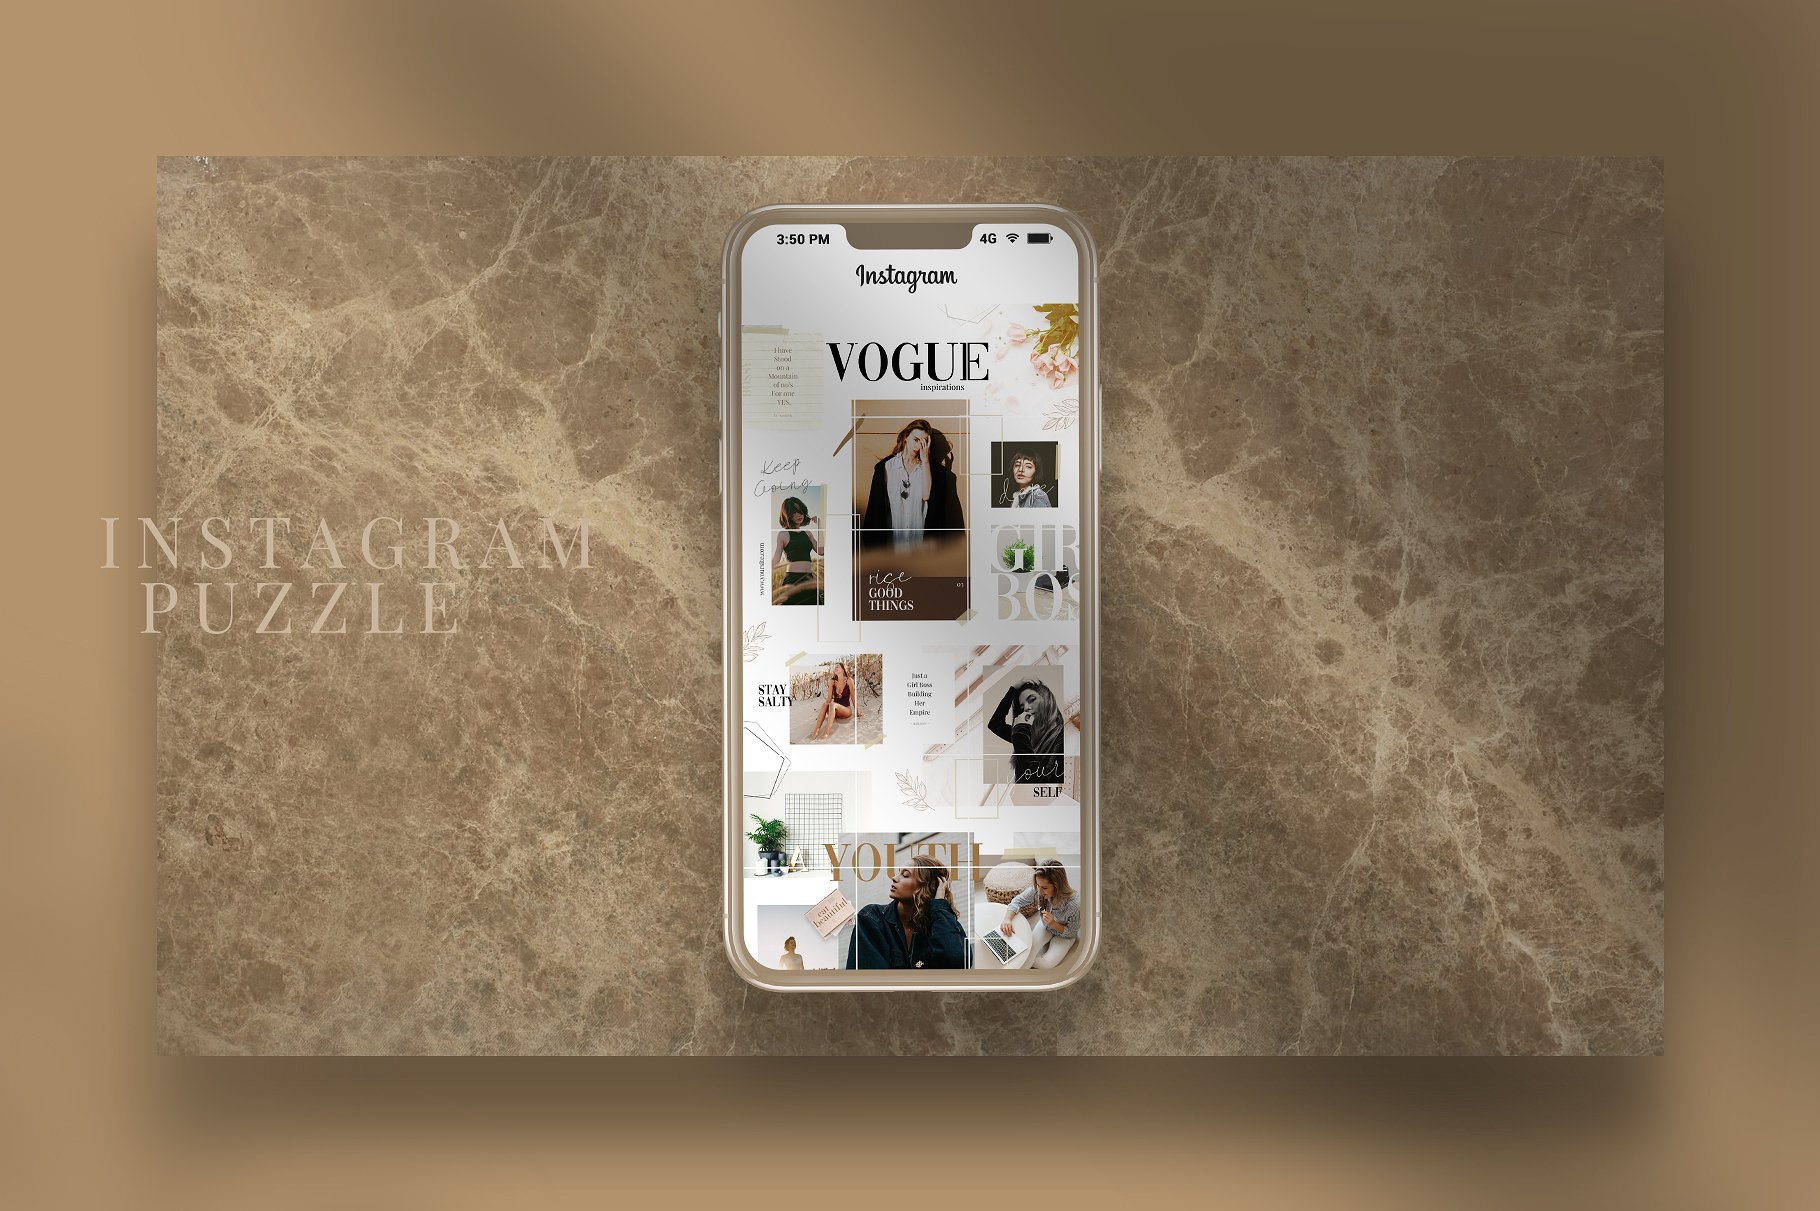 时尚高端的Instagram社交媒体拼图模板第一素材精选 Vogue – instagram puzzle [psd]插图(5)